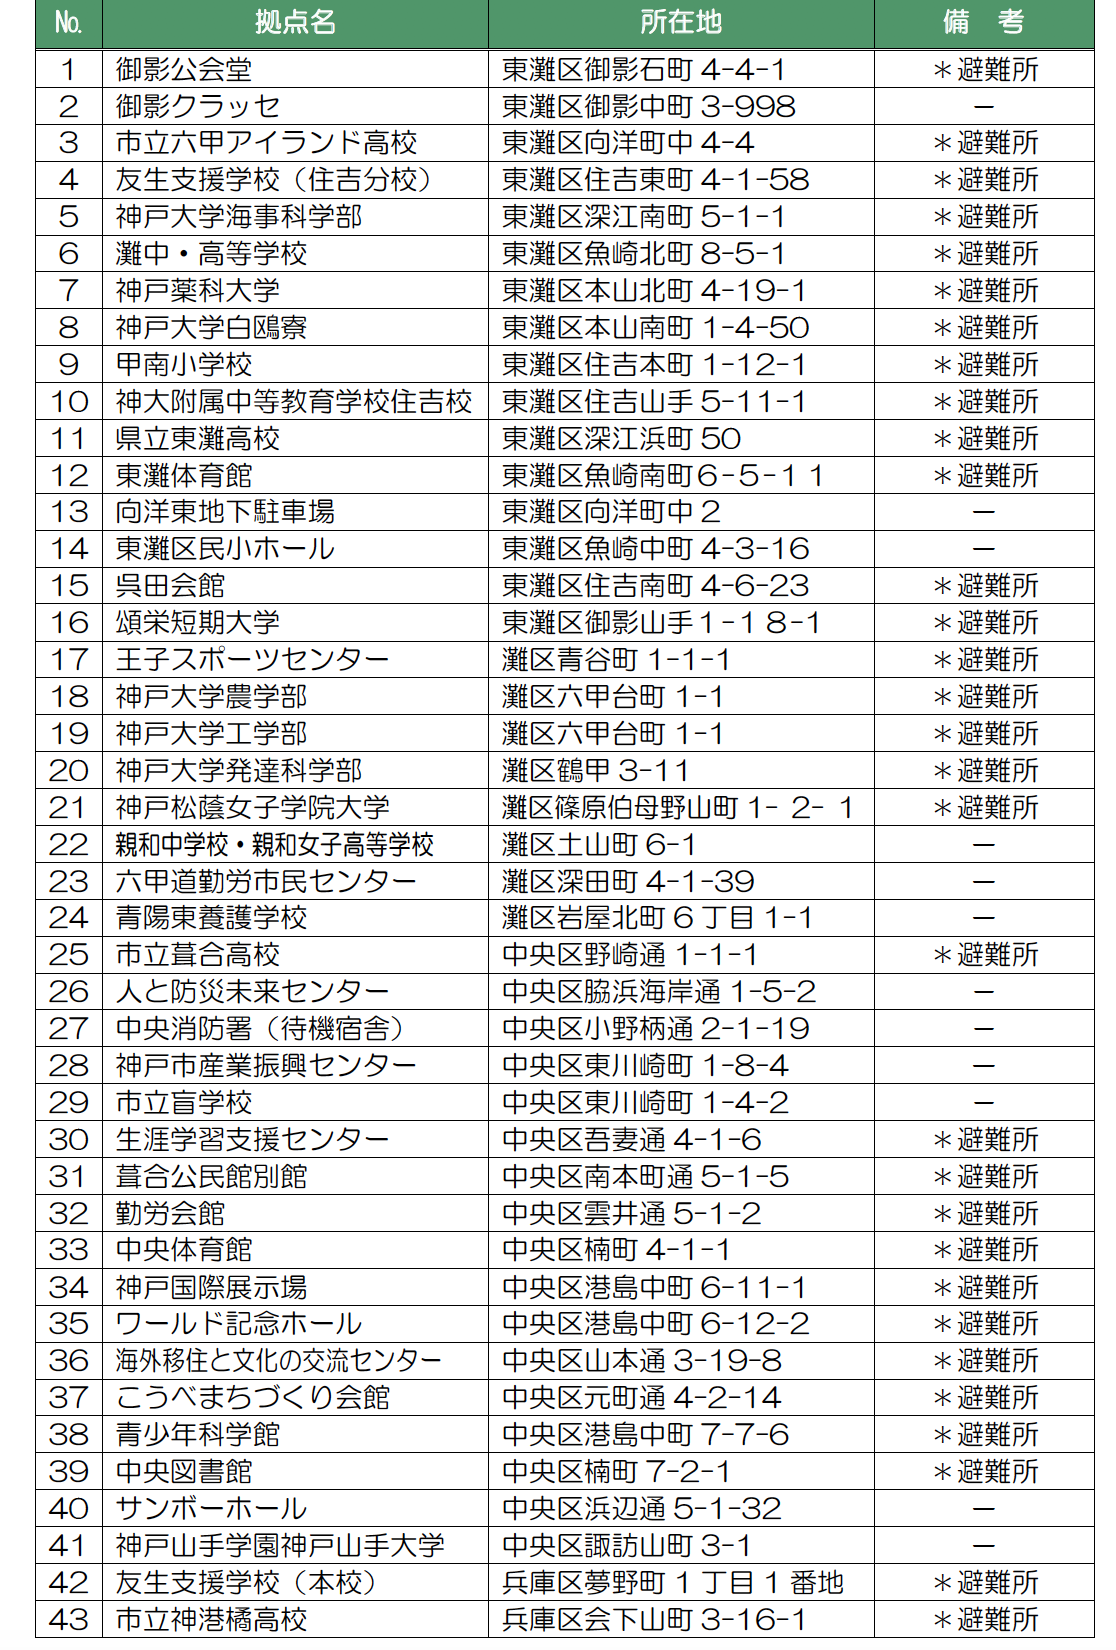 神戸市の小中学校以外に備蓄している施設一覧1